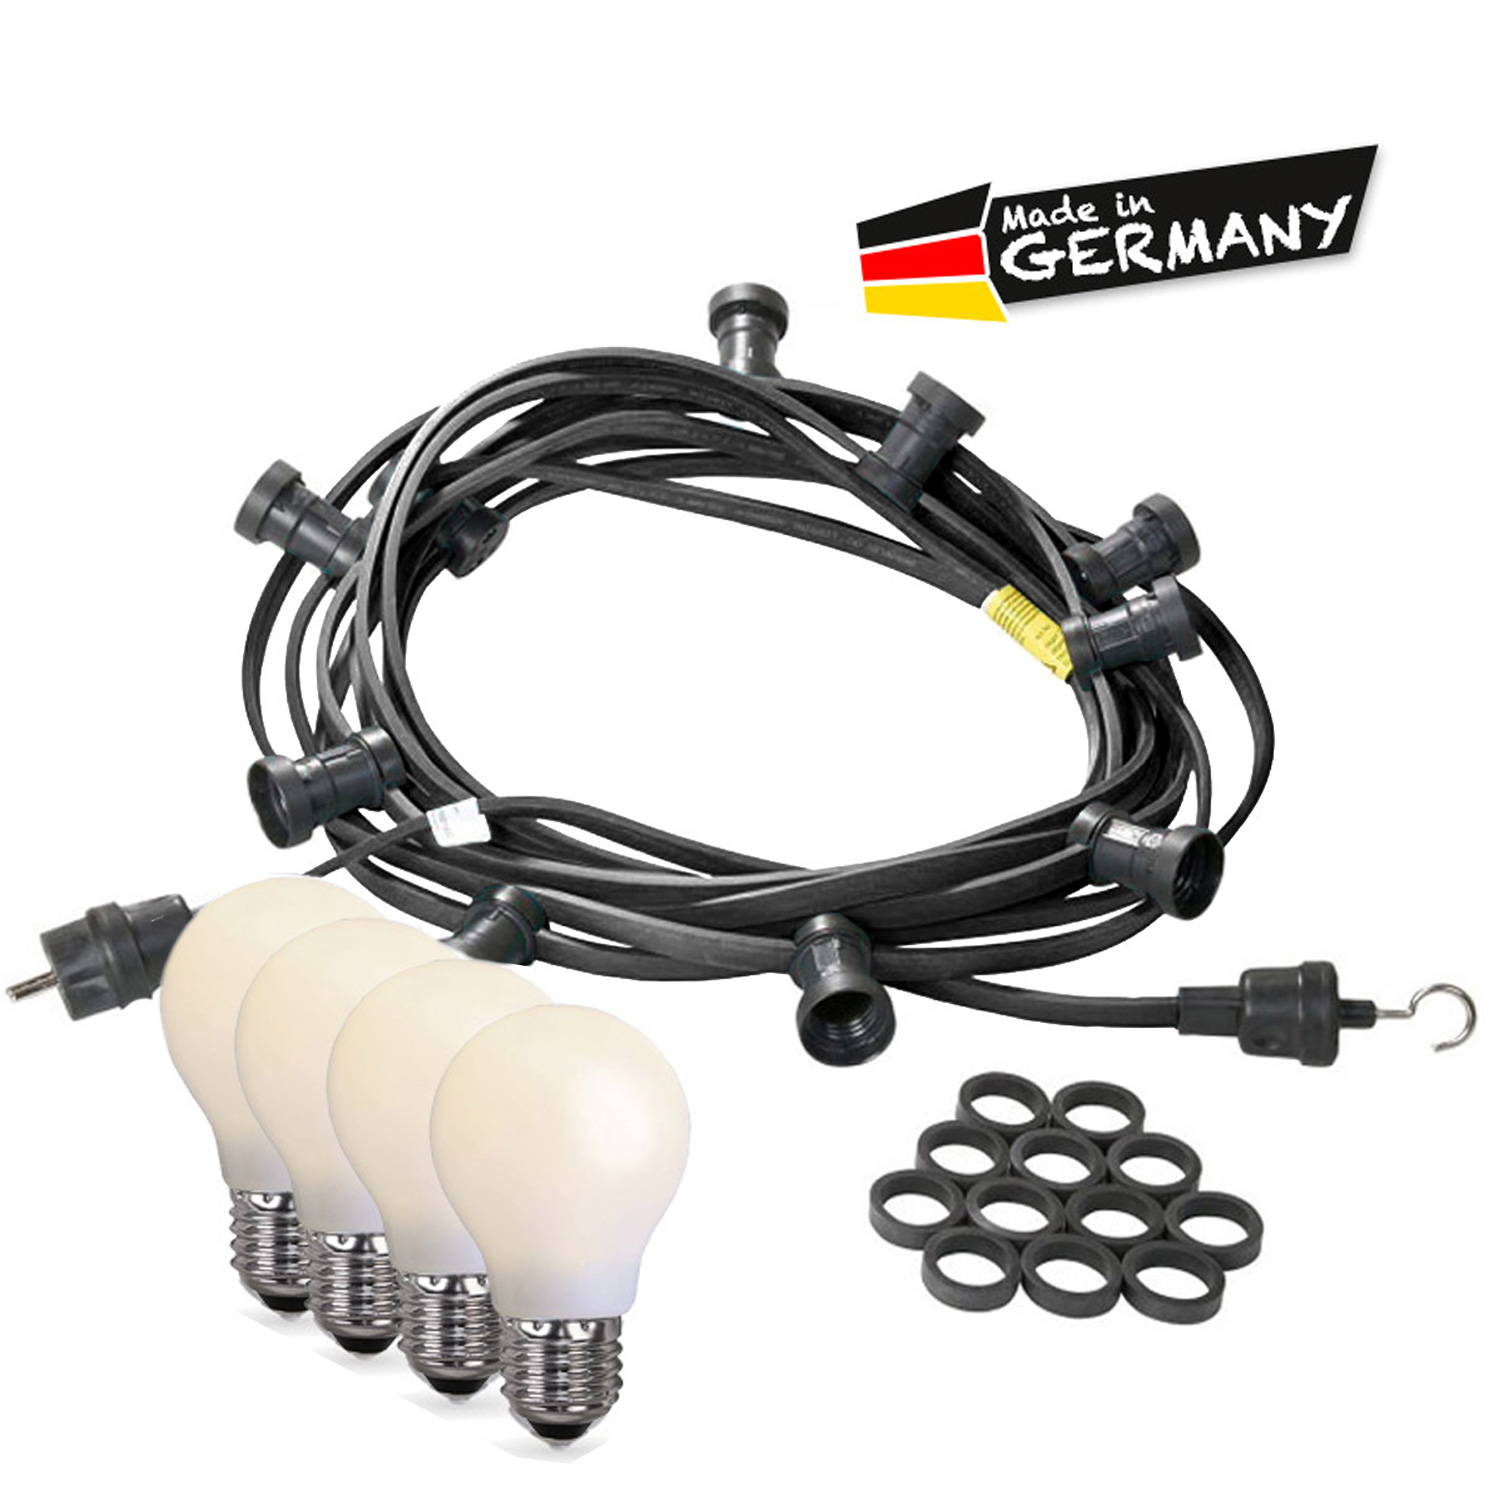 Illu-/Partylichterkette 10m - Außen - Made in Germany - 30 bruchfeste opale LED Tropfenlampen